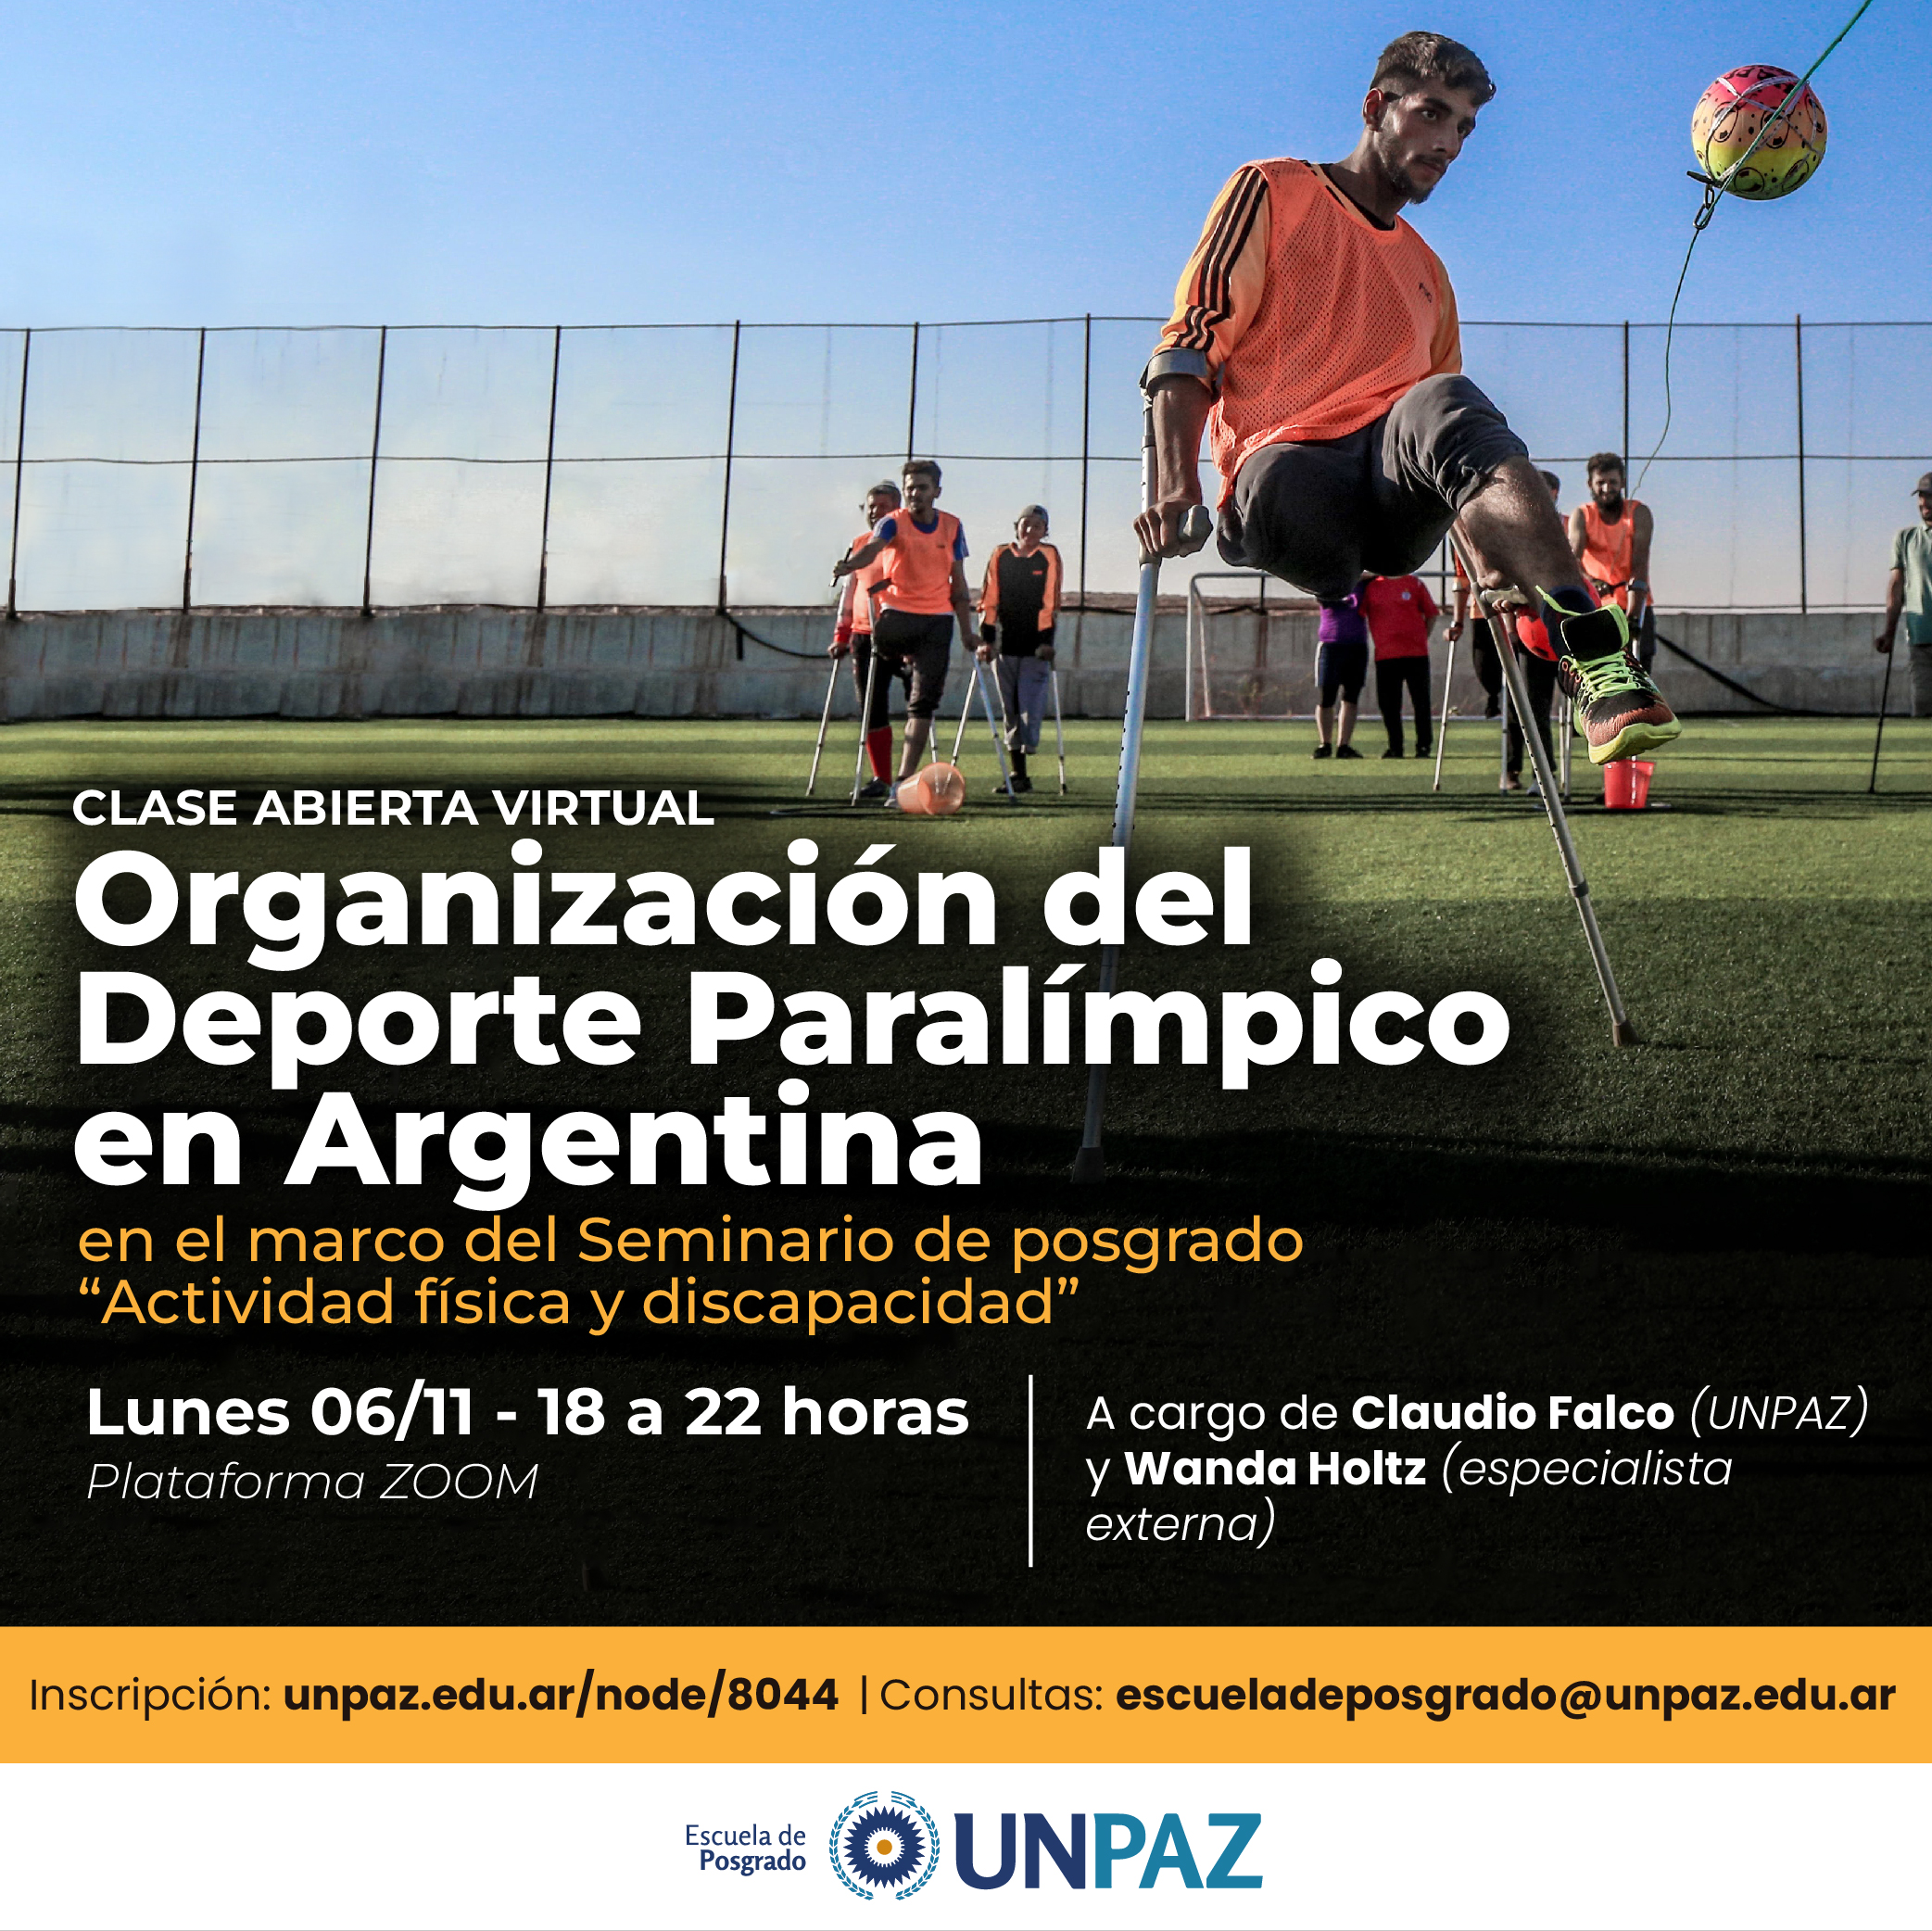 Clase abierta “Organización del Deporte Paralímpico en Argentina”